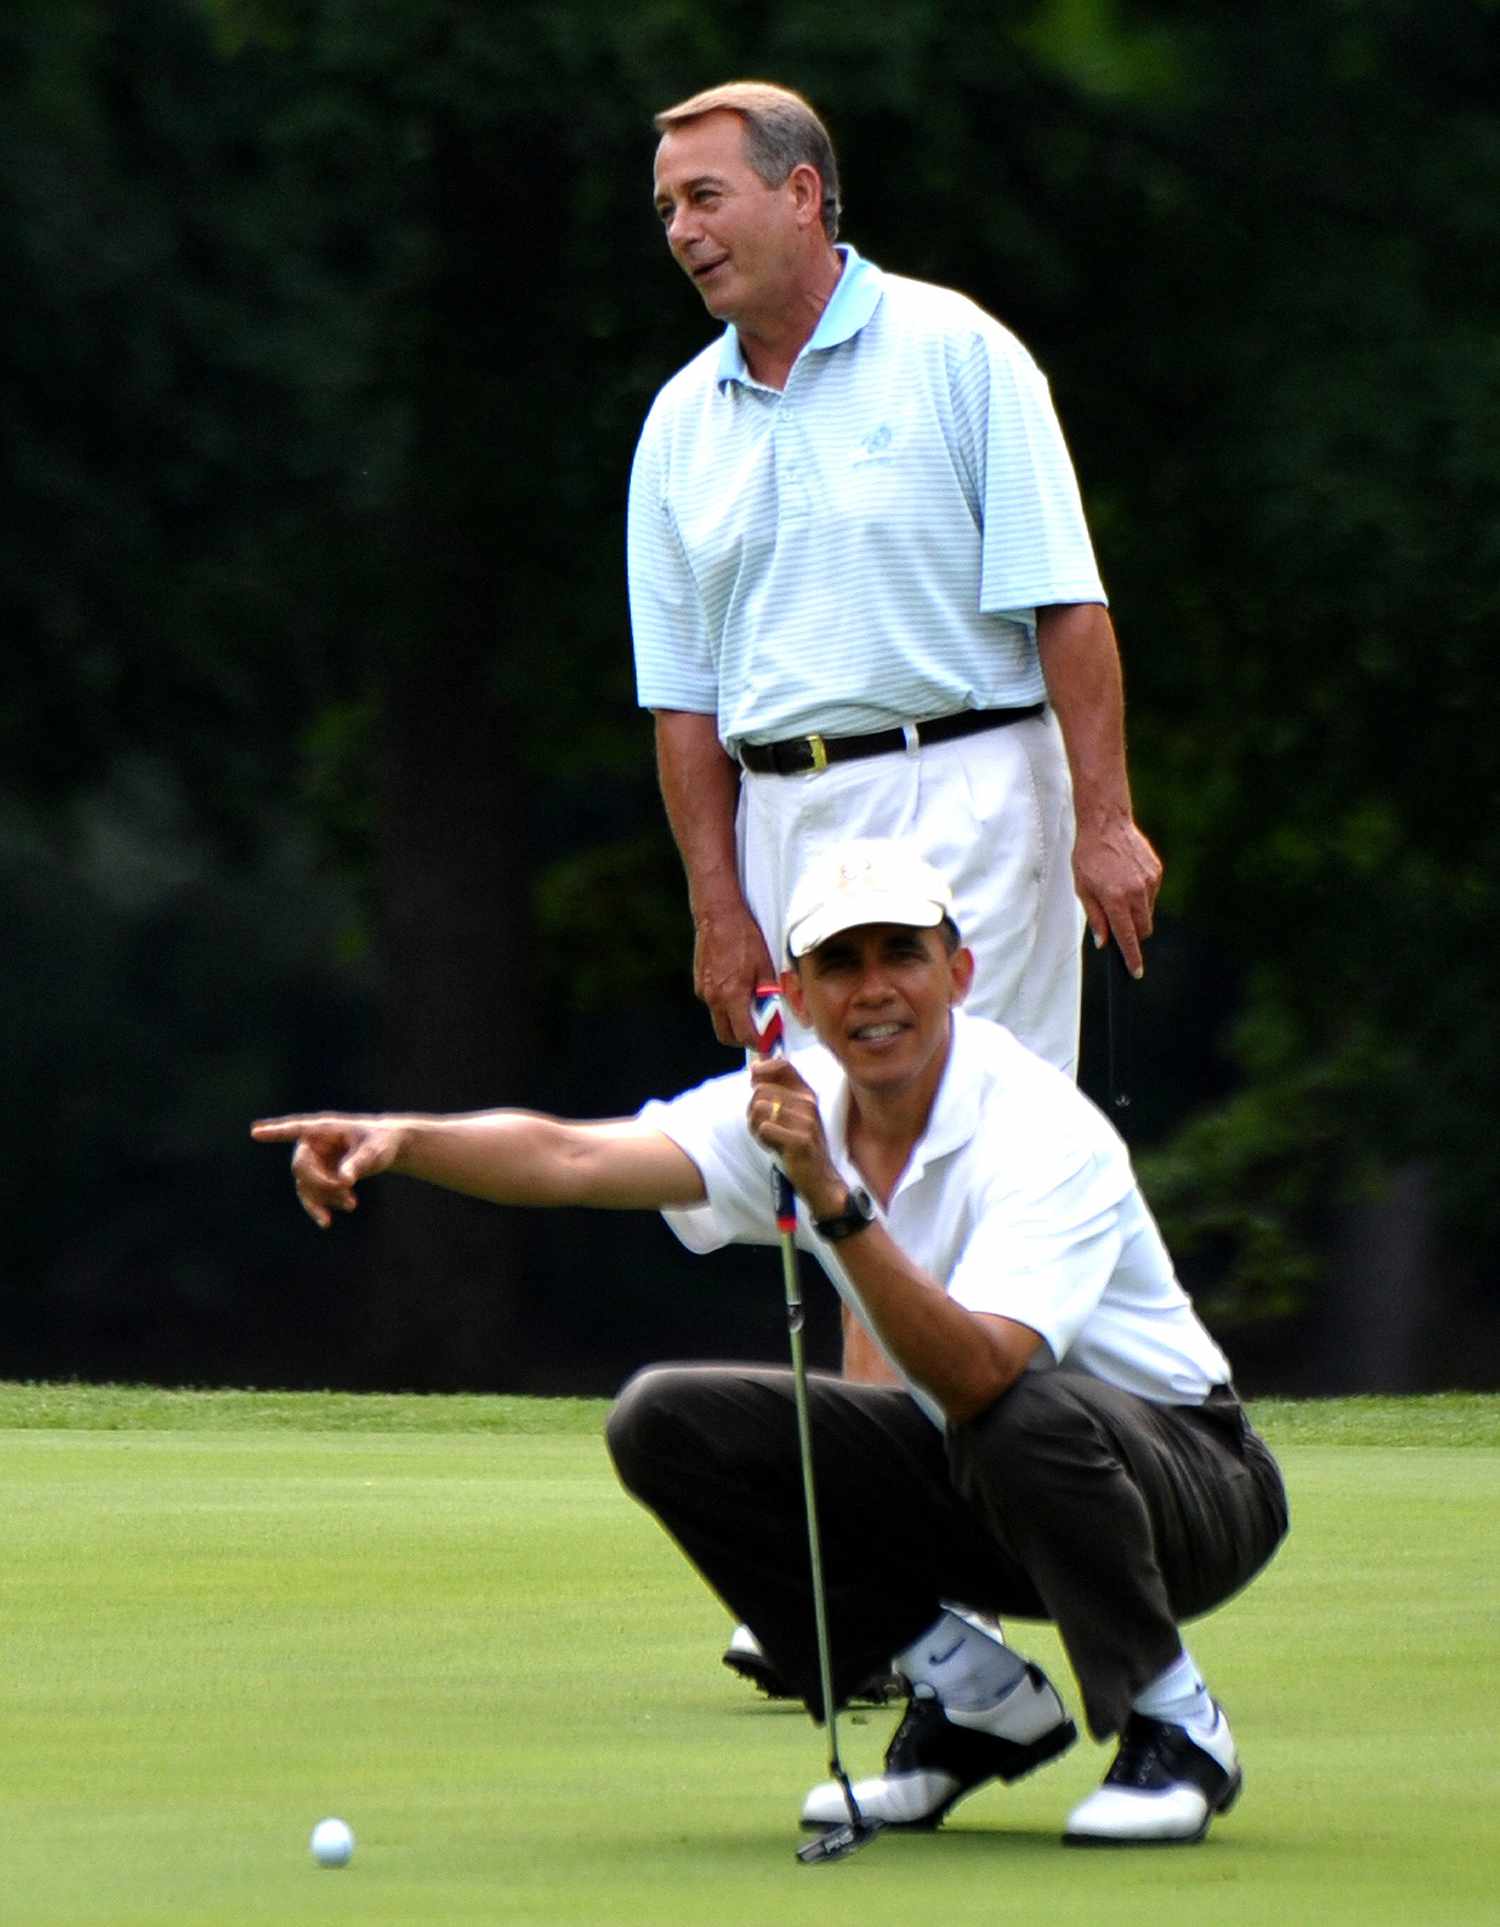 Barack Obama and Republican House Speaker John Boehner